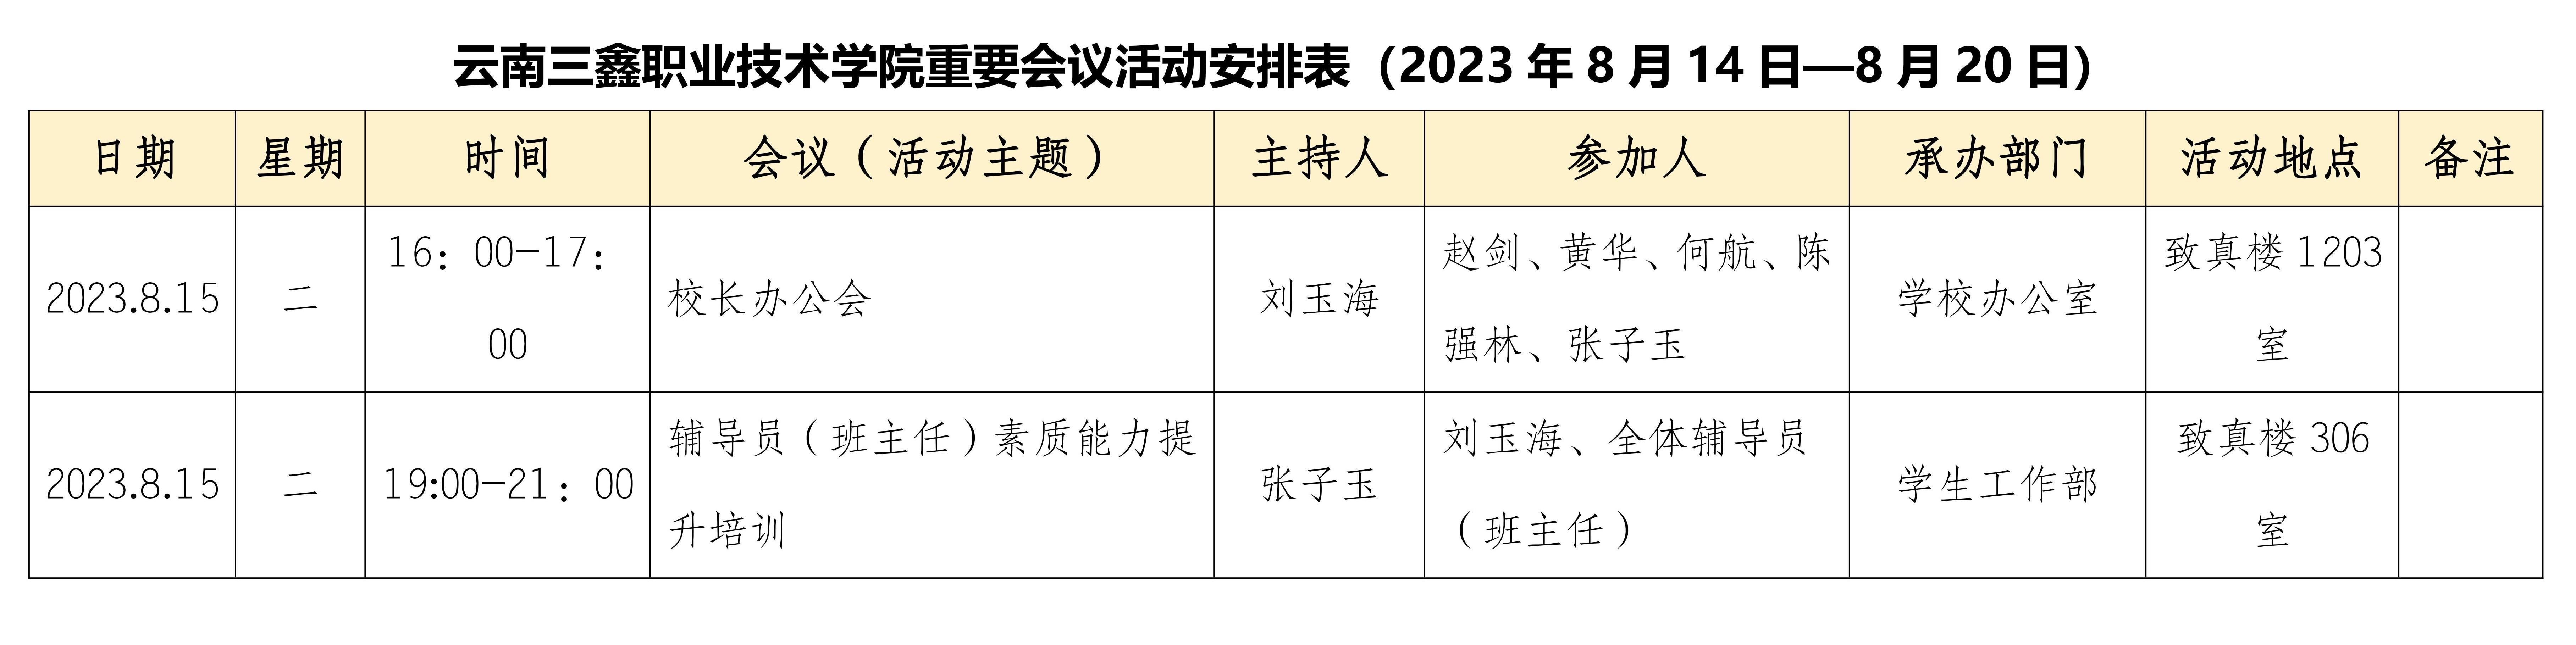 麻花痘精国品在线入口重要会议活动安排表（2023年8月14日—8月20日）